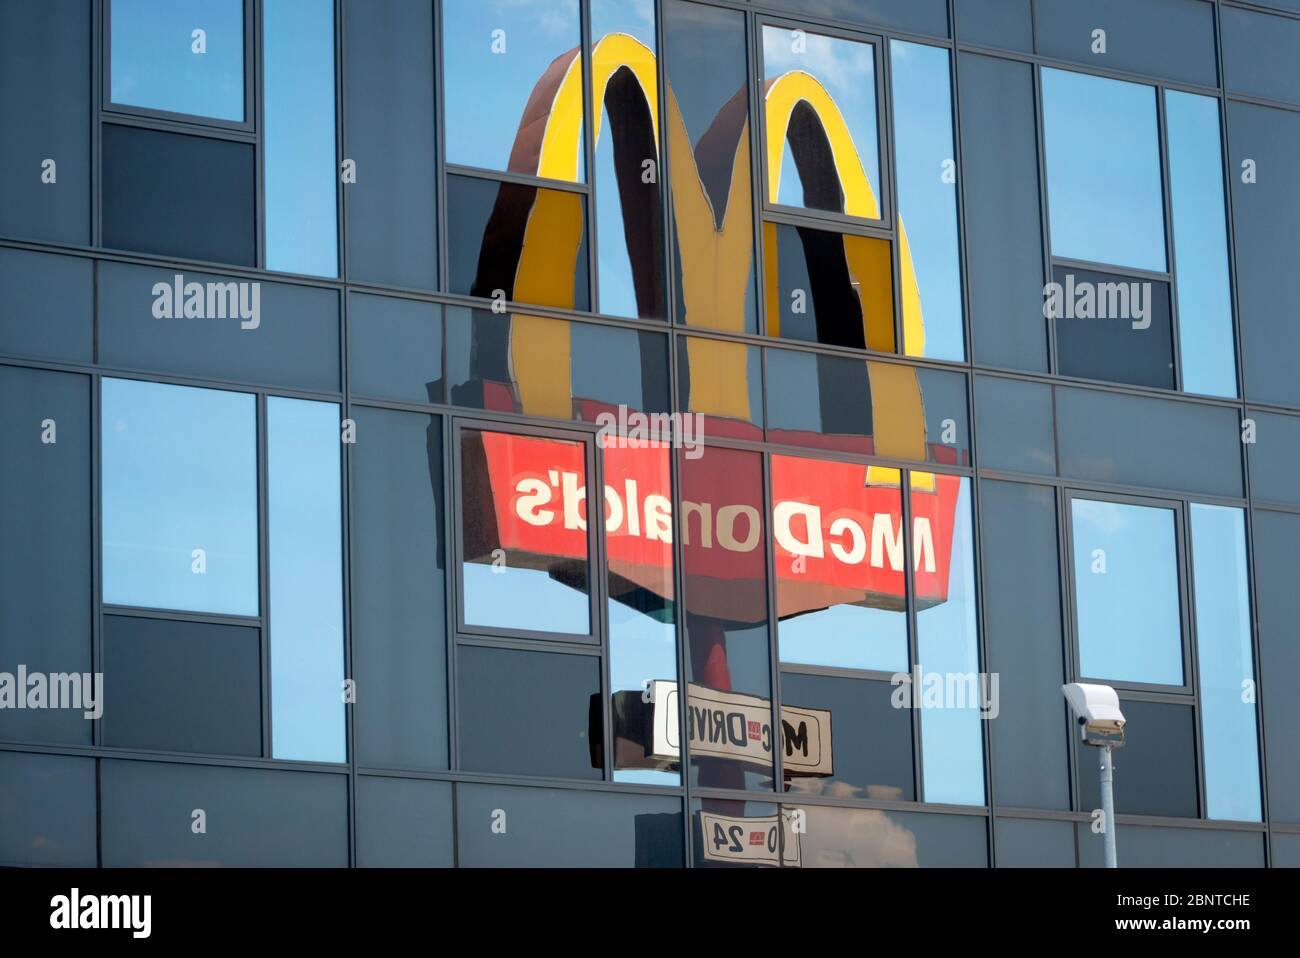 El logotipo y el cartel de McDonald's reflejan el edificio de cristal como una composición inusual y única Foto de stock